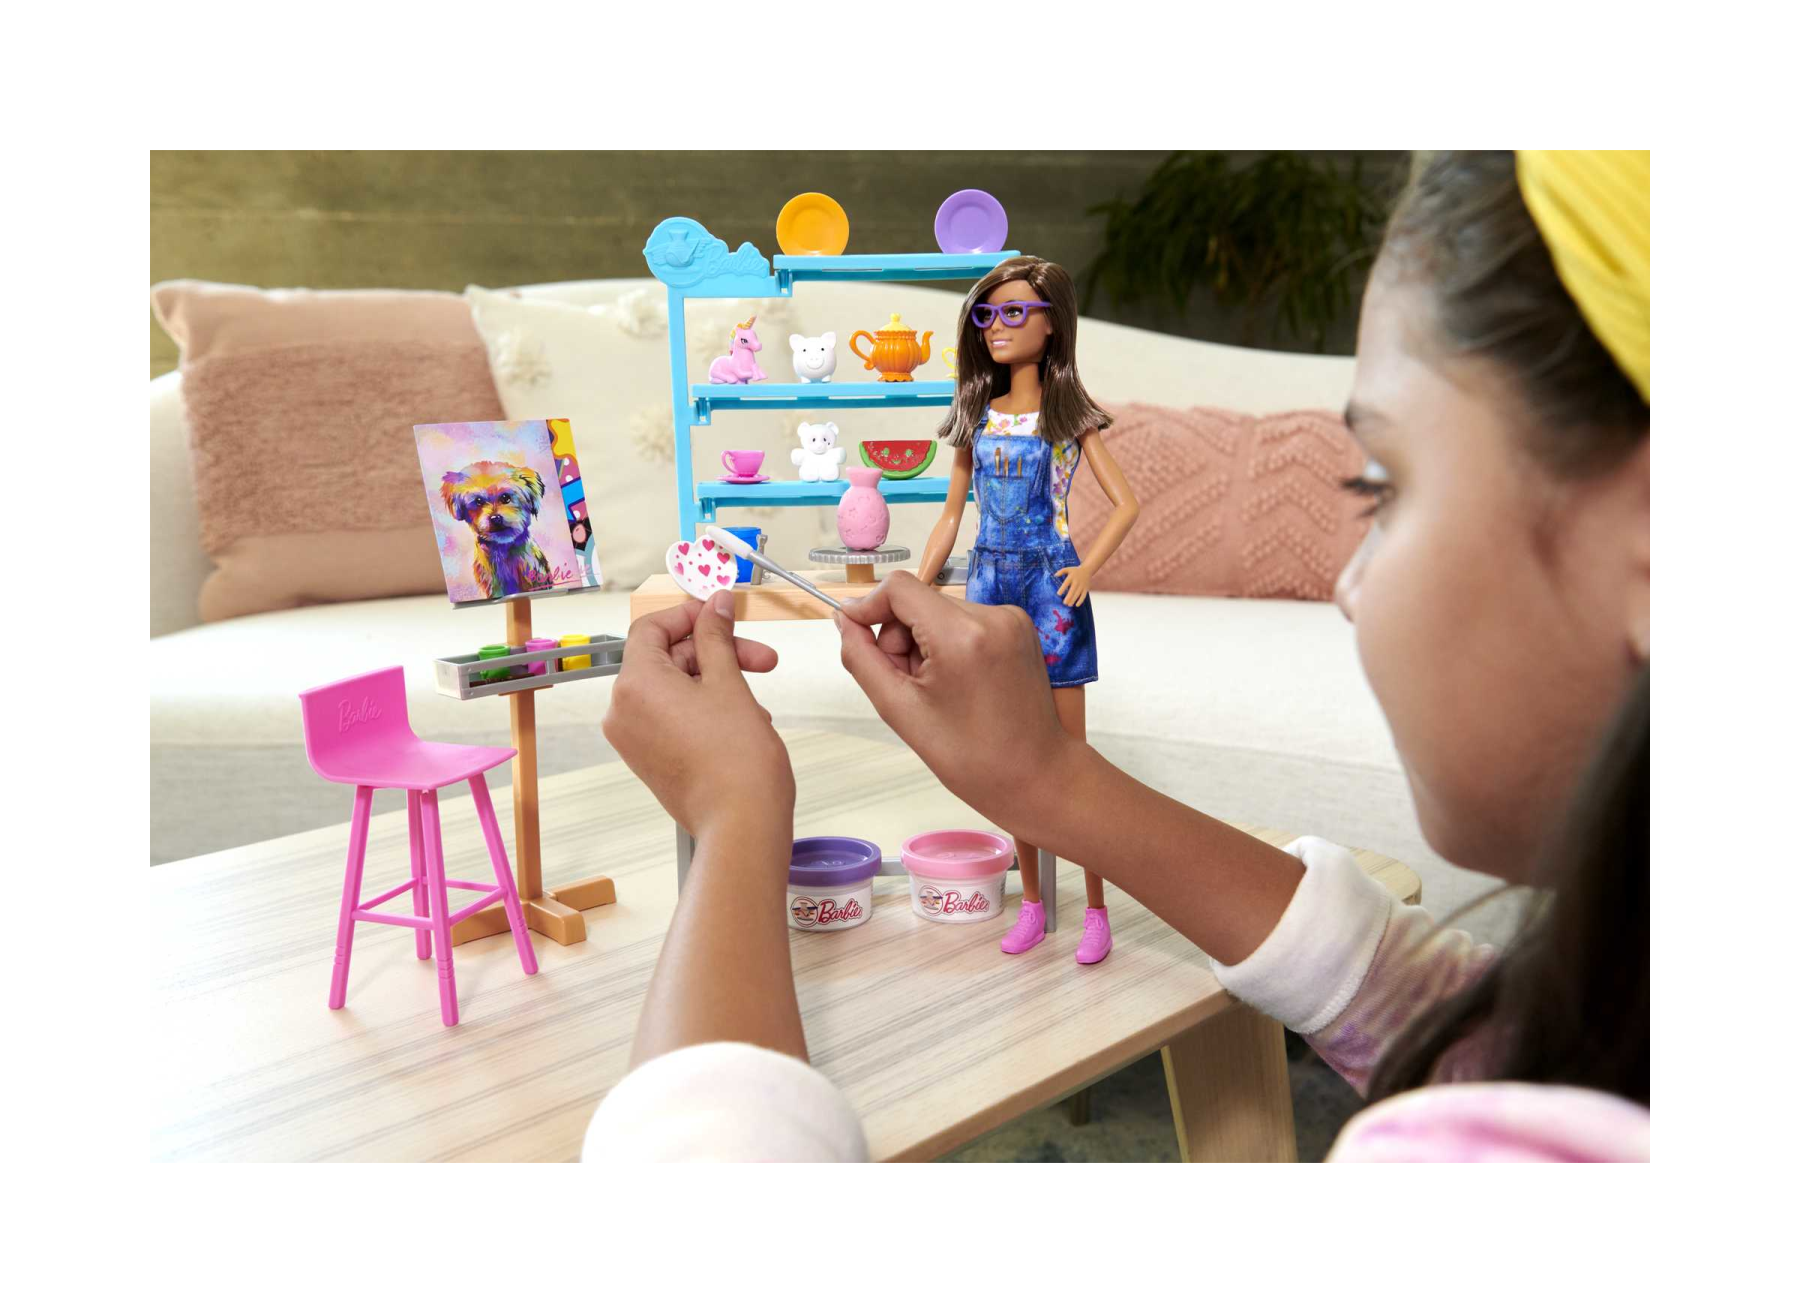 Barbie studio d'arte creatività e relax, bambola barbie, oltre 25 accessori per creare e dipingere, pasta da modellare, stampi, tele e altro ancora, giocattolo per bambini dai 3 ai 7 anni - Barbie